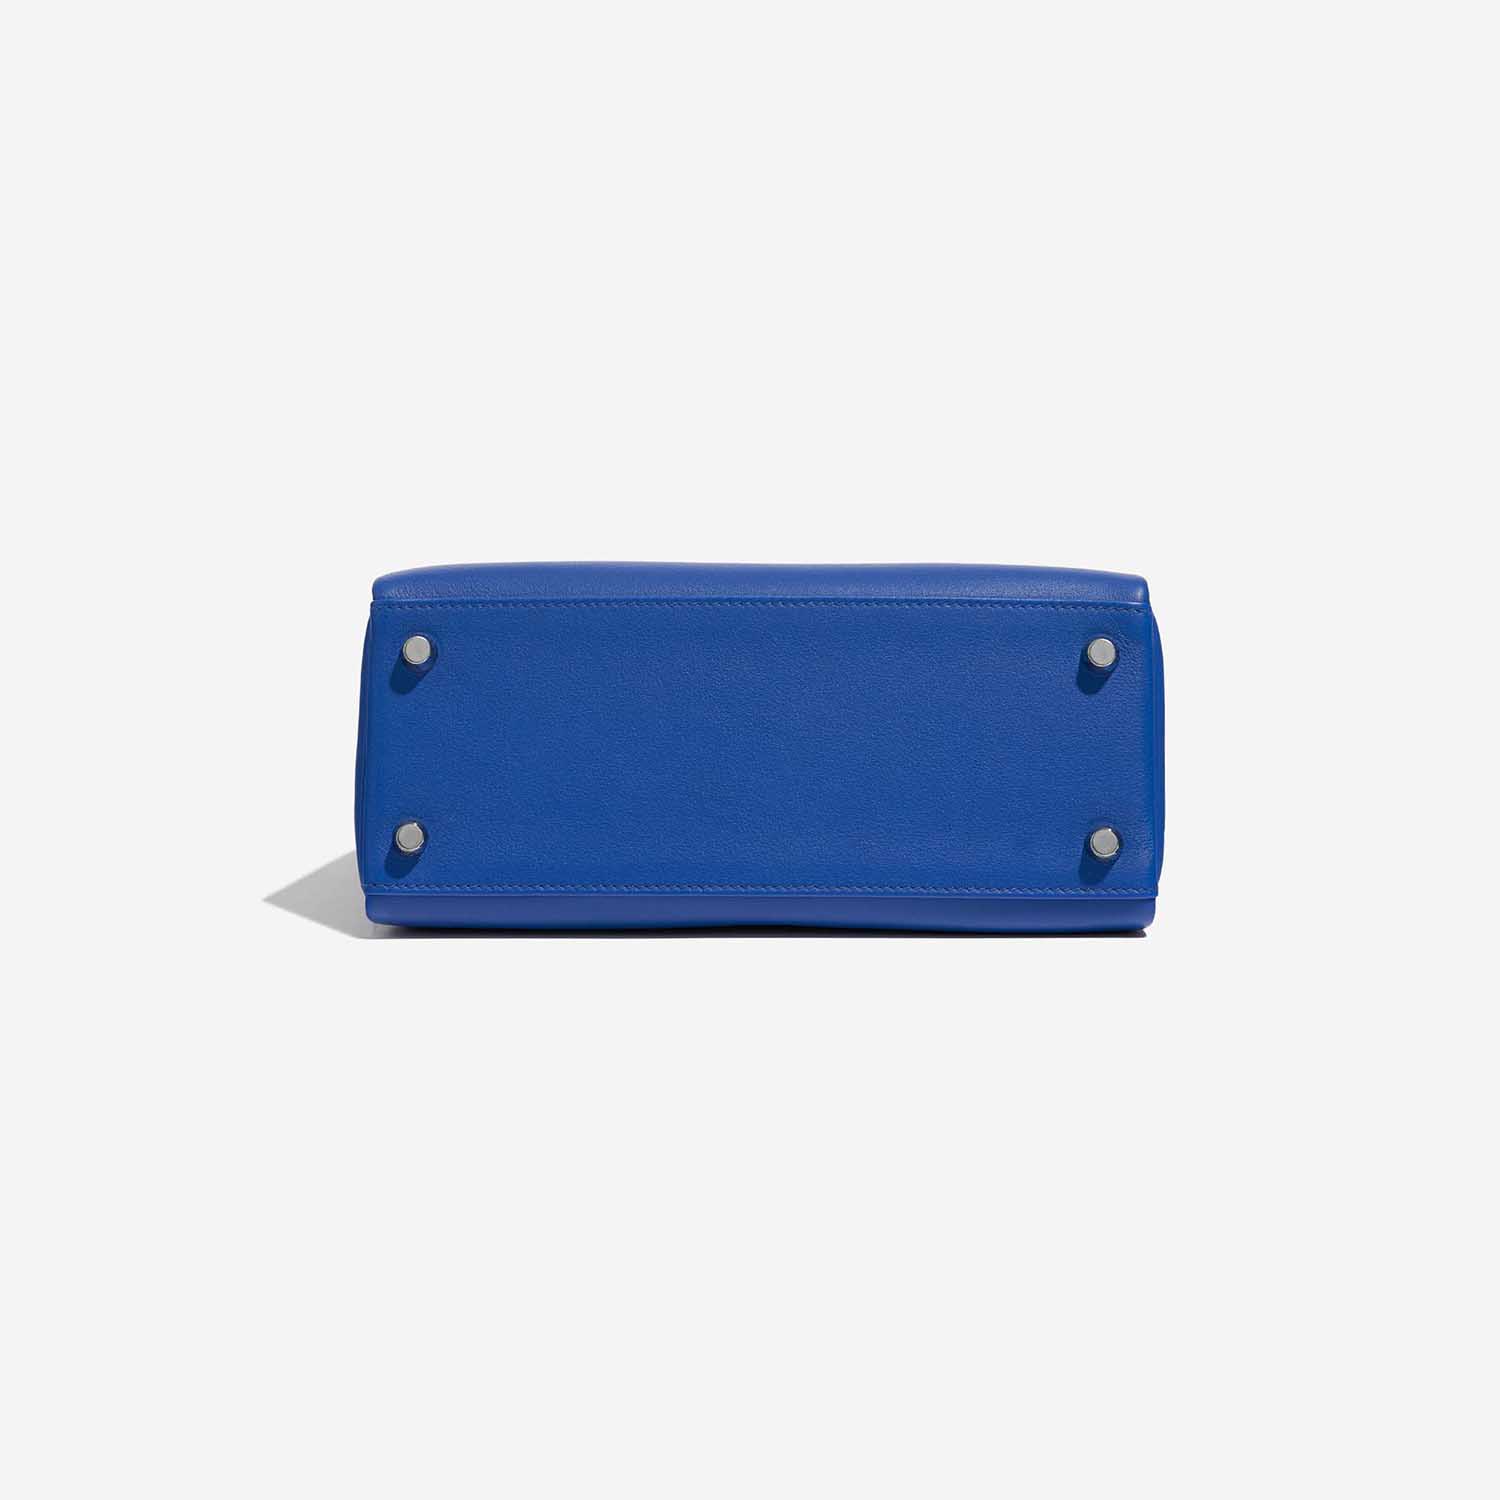 Pre-owned Hermès Tasche Kelly 25 Swift Blau Frankreich Blauer Boden | Verkaufen Sie Ihre Designer-Tasche auf Saclab.com